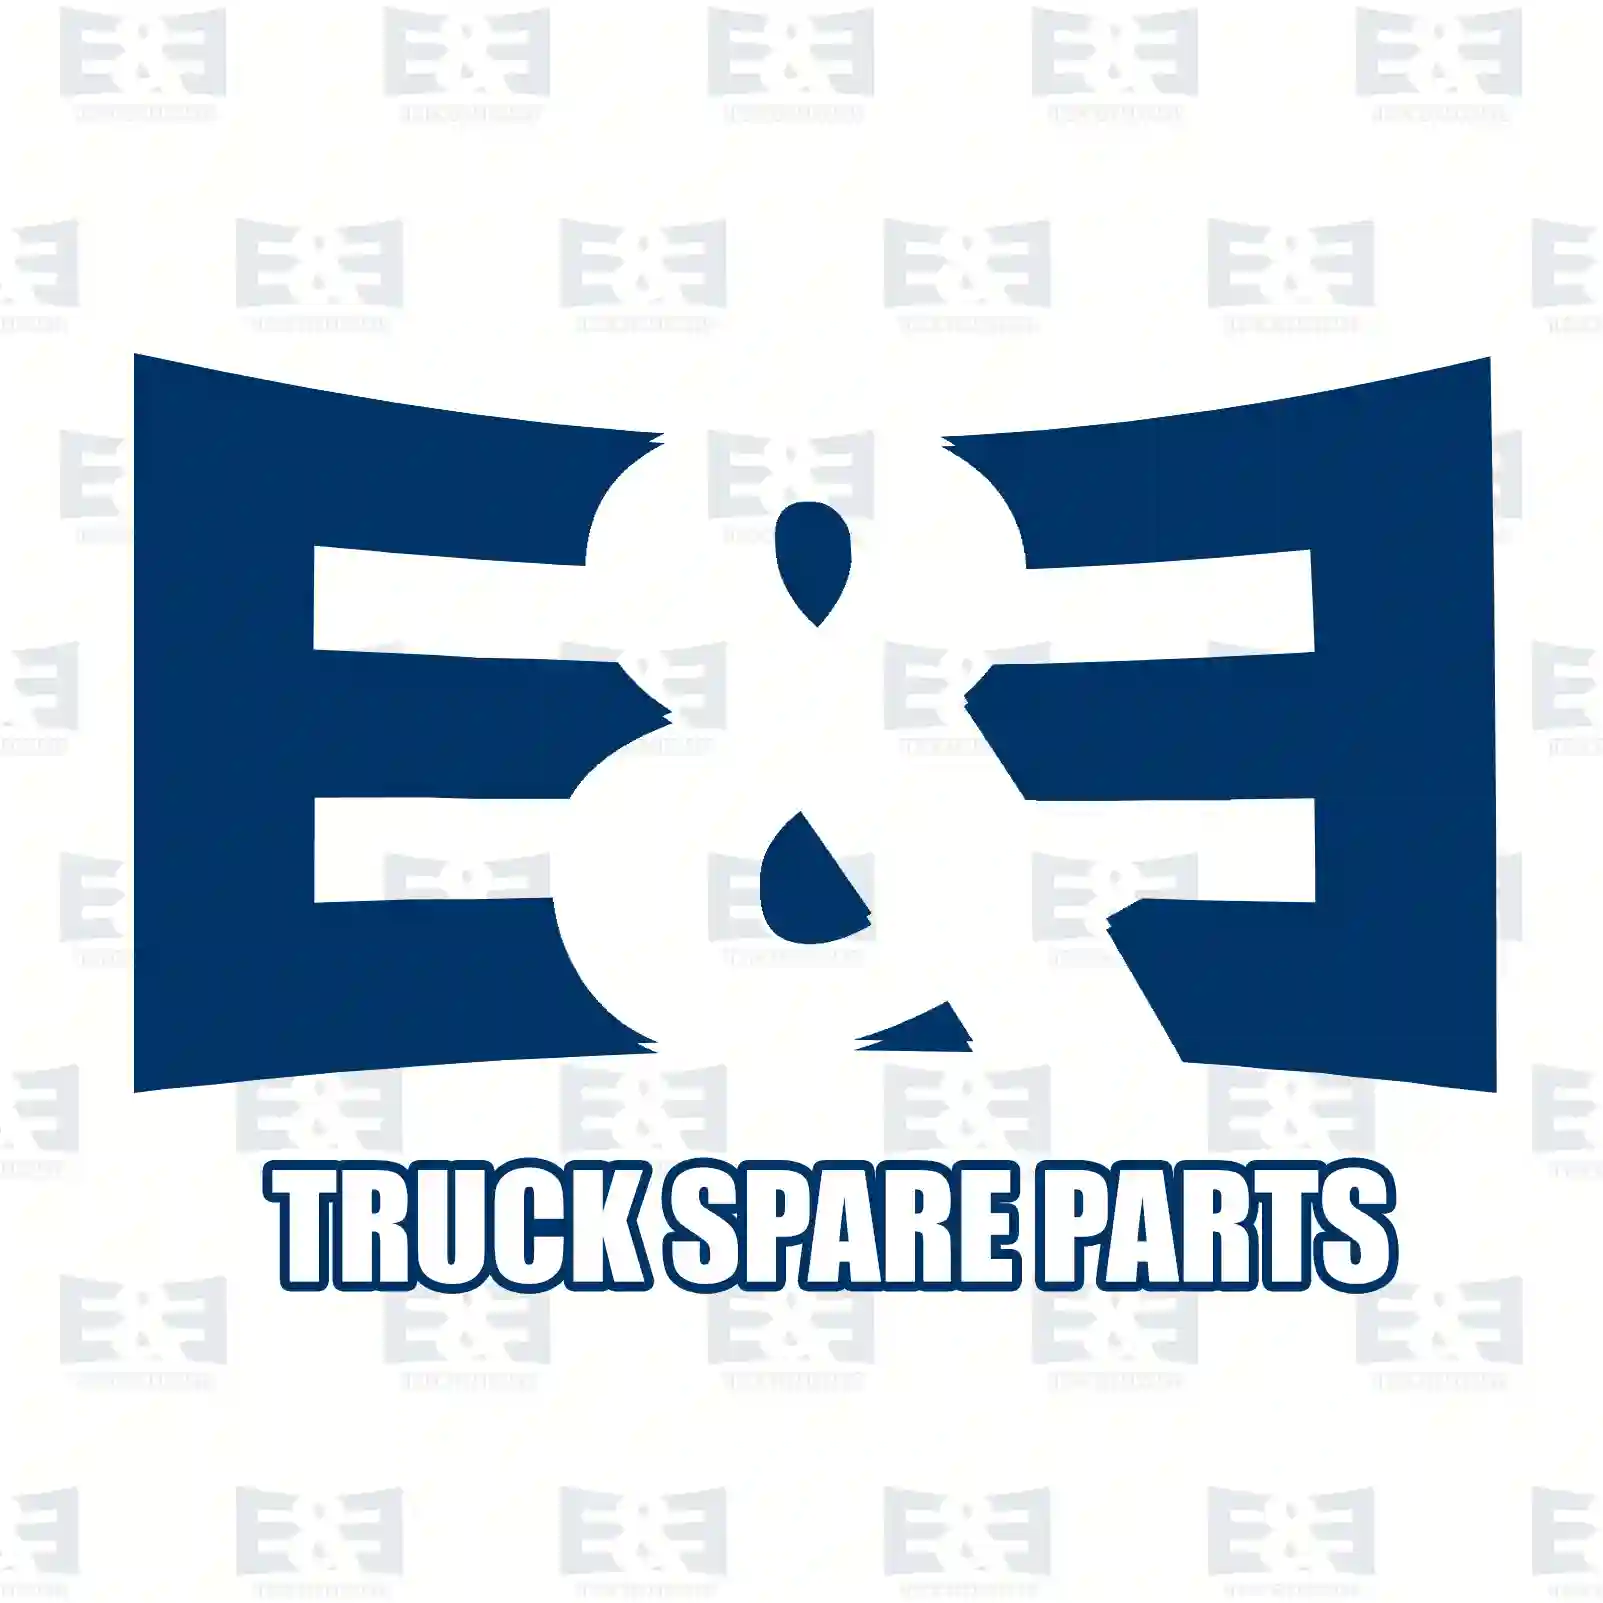 Propeller shaft, 2E2276023, 81391066794, 8139 ||  2E2276023 E&E Truck Spare Parts | Truck Spare Parts, Auotomotive Spare Parts Propeller shaft, 2E2276023, 81391066794, 8139 ||  2E2276023 E&E Truck Spare Parts | Truck Spare Parts, Auotomotive Spare Parts